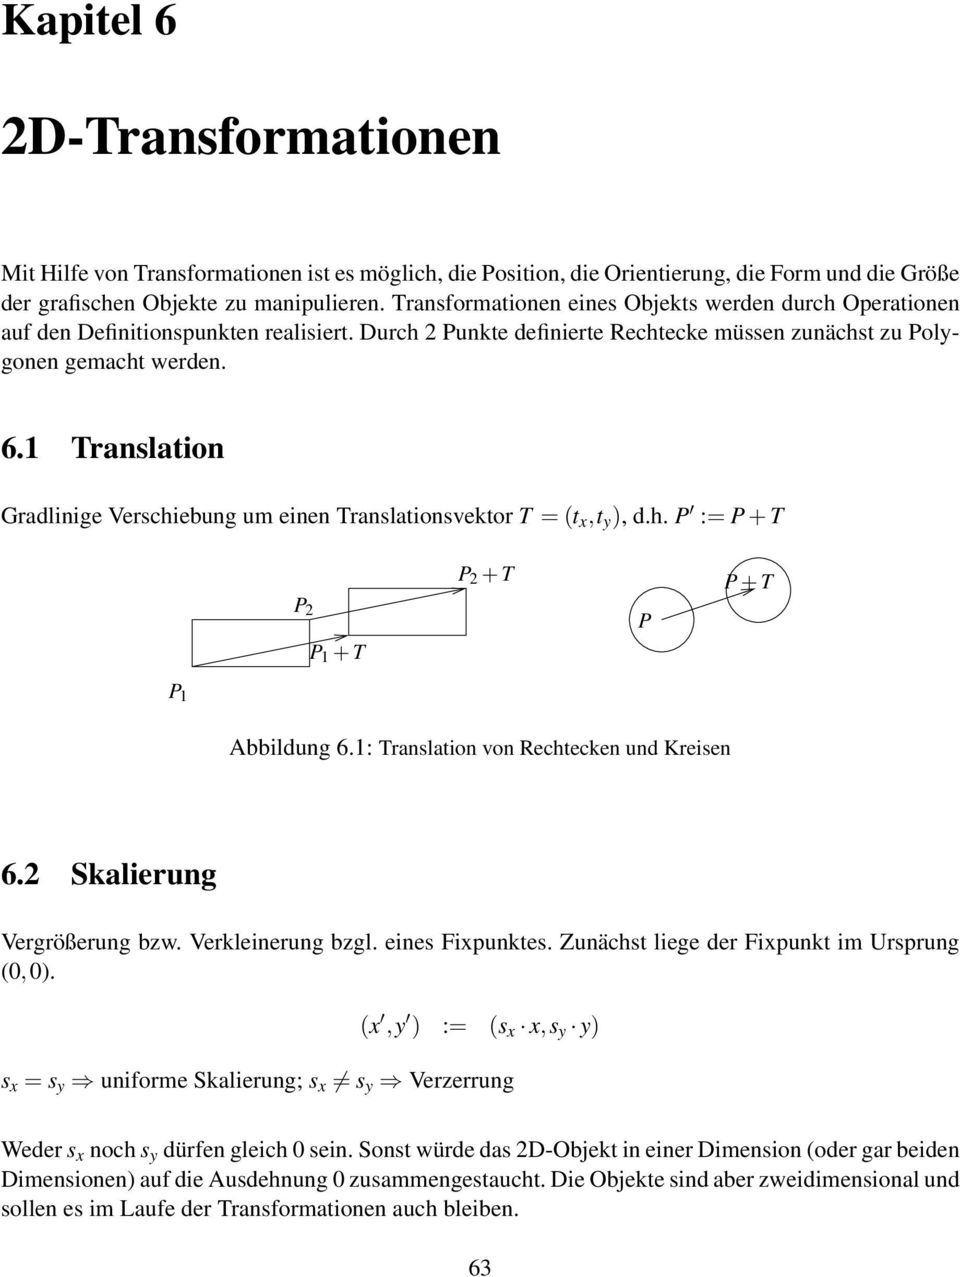 Translation Gradlinige Verschiebung um einen Translationsvektor T = (t x,t ), d.h. P := P + T P 2 P + T P 2 + T P P + T P Abbildung 6.: Translation von Rechtecken und Kreisen 6.